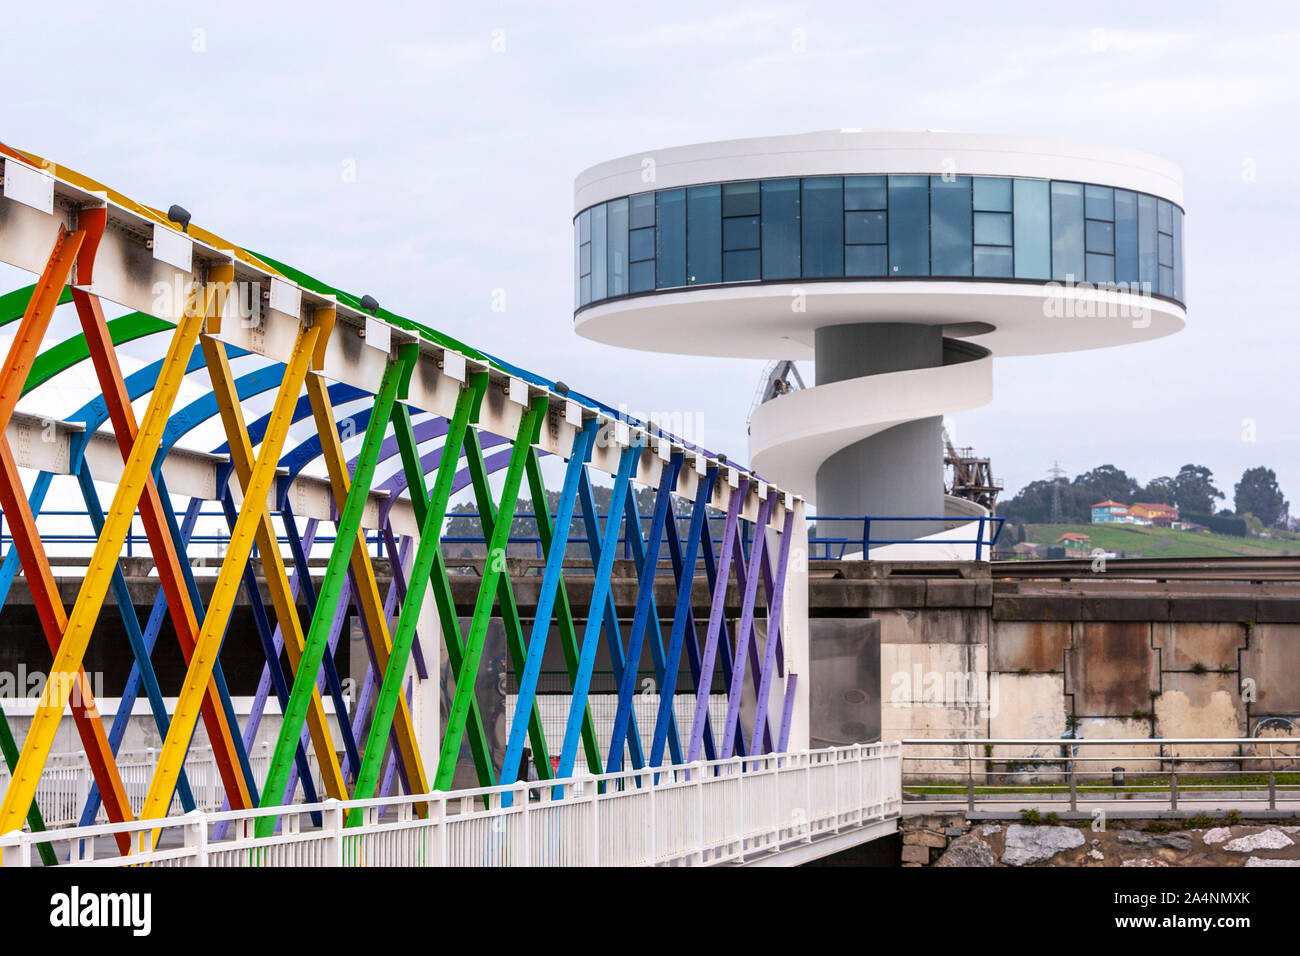 Puente de San Sebastián, farbig von Ramón Rodríguez gemalt, an Oscar Niemeyer International Cultural Centre, Avilés, Asturien, Spanien Stockfoto